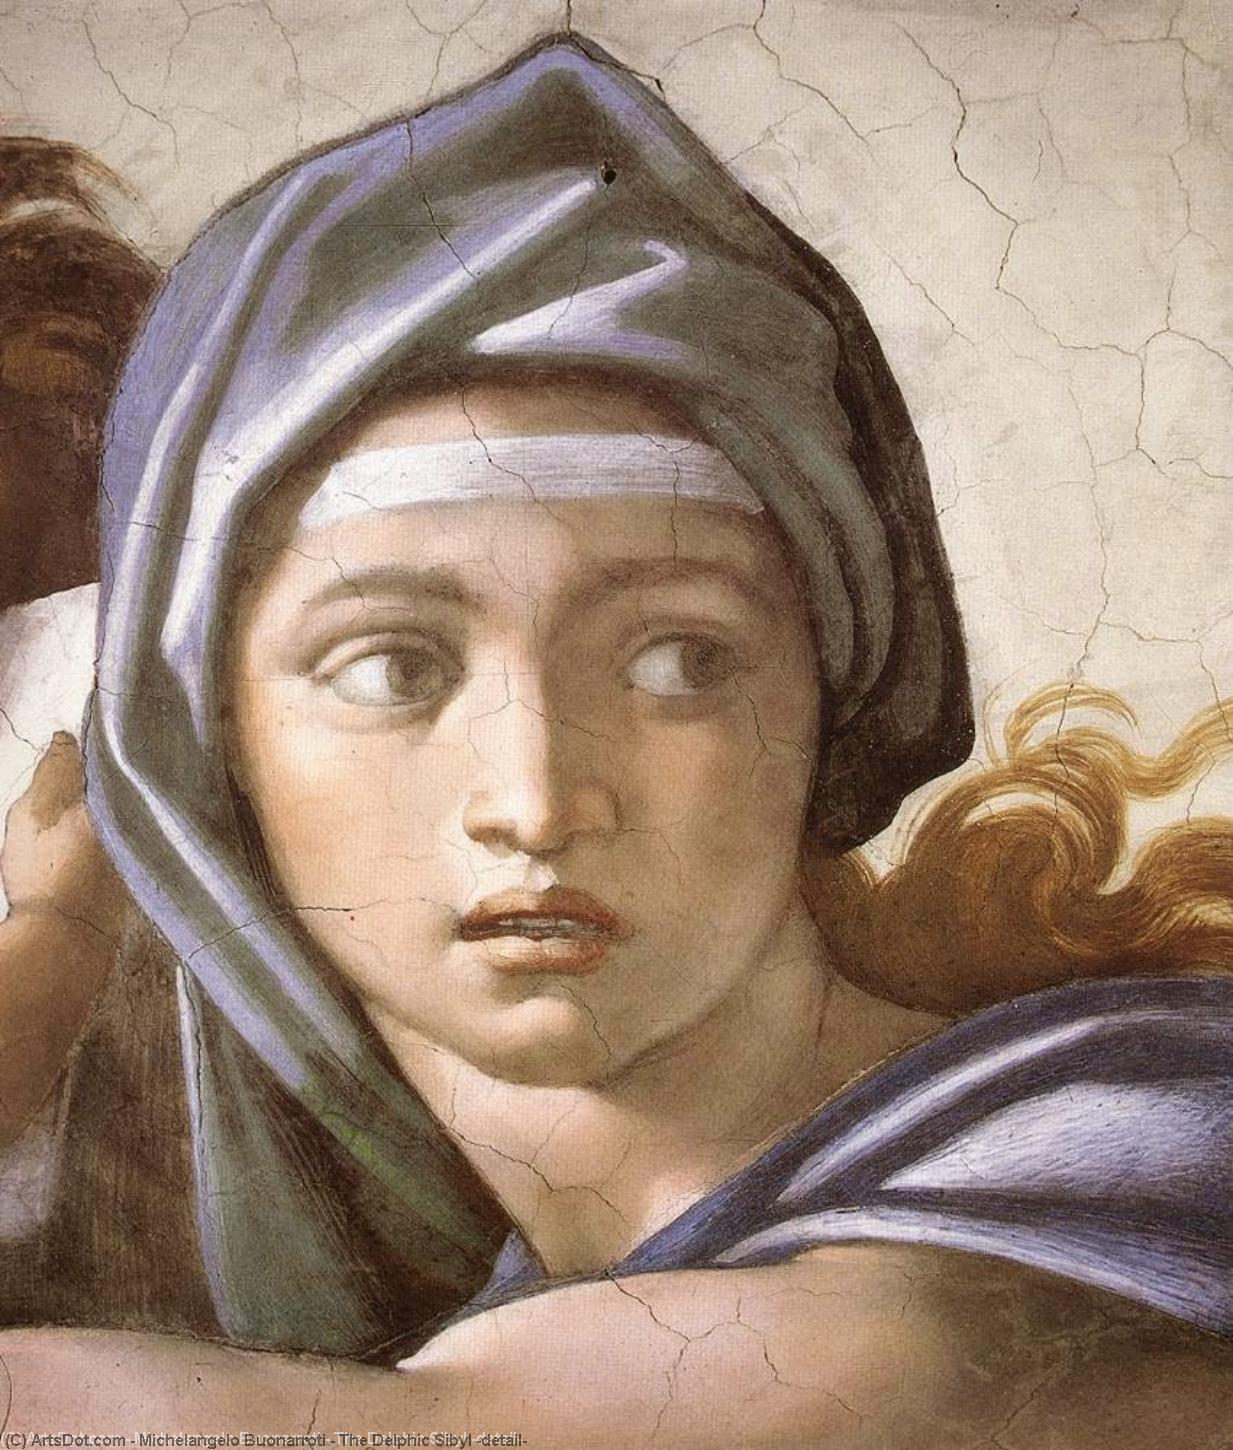 WikiOO.org - Encyclopedia of Fine Arts - Maleri, Artwork Michelangelo Buonarroti - The Delphic Sibyl (detail)